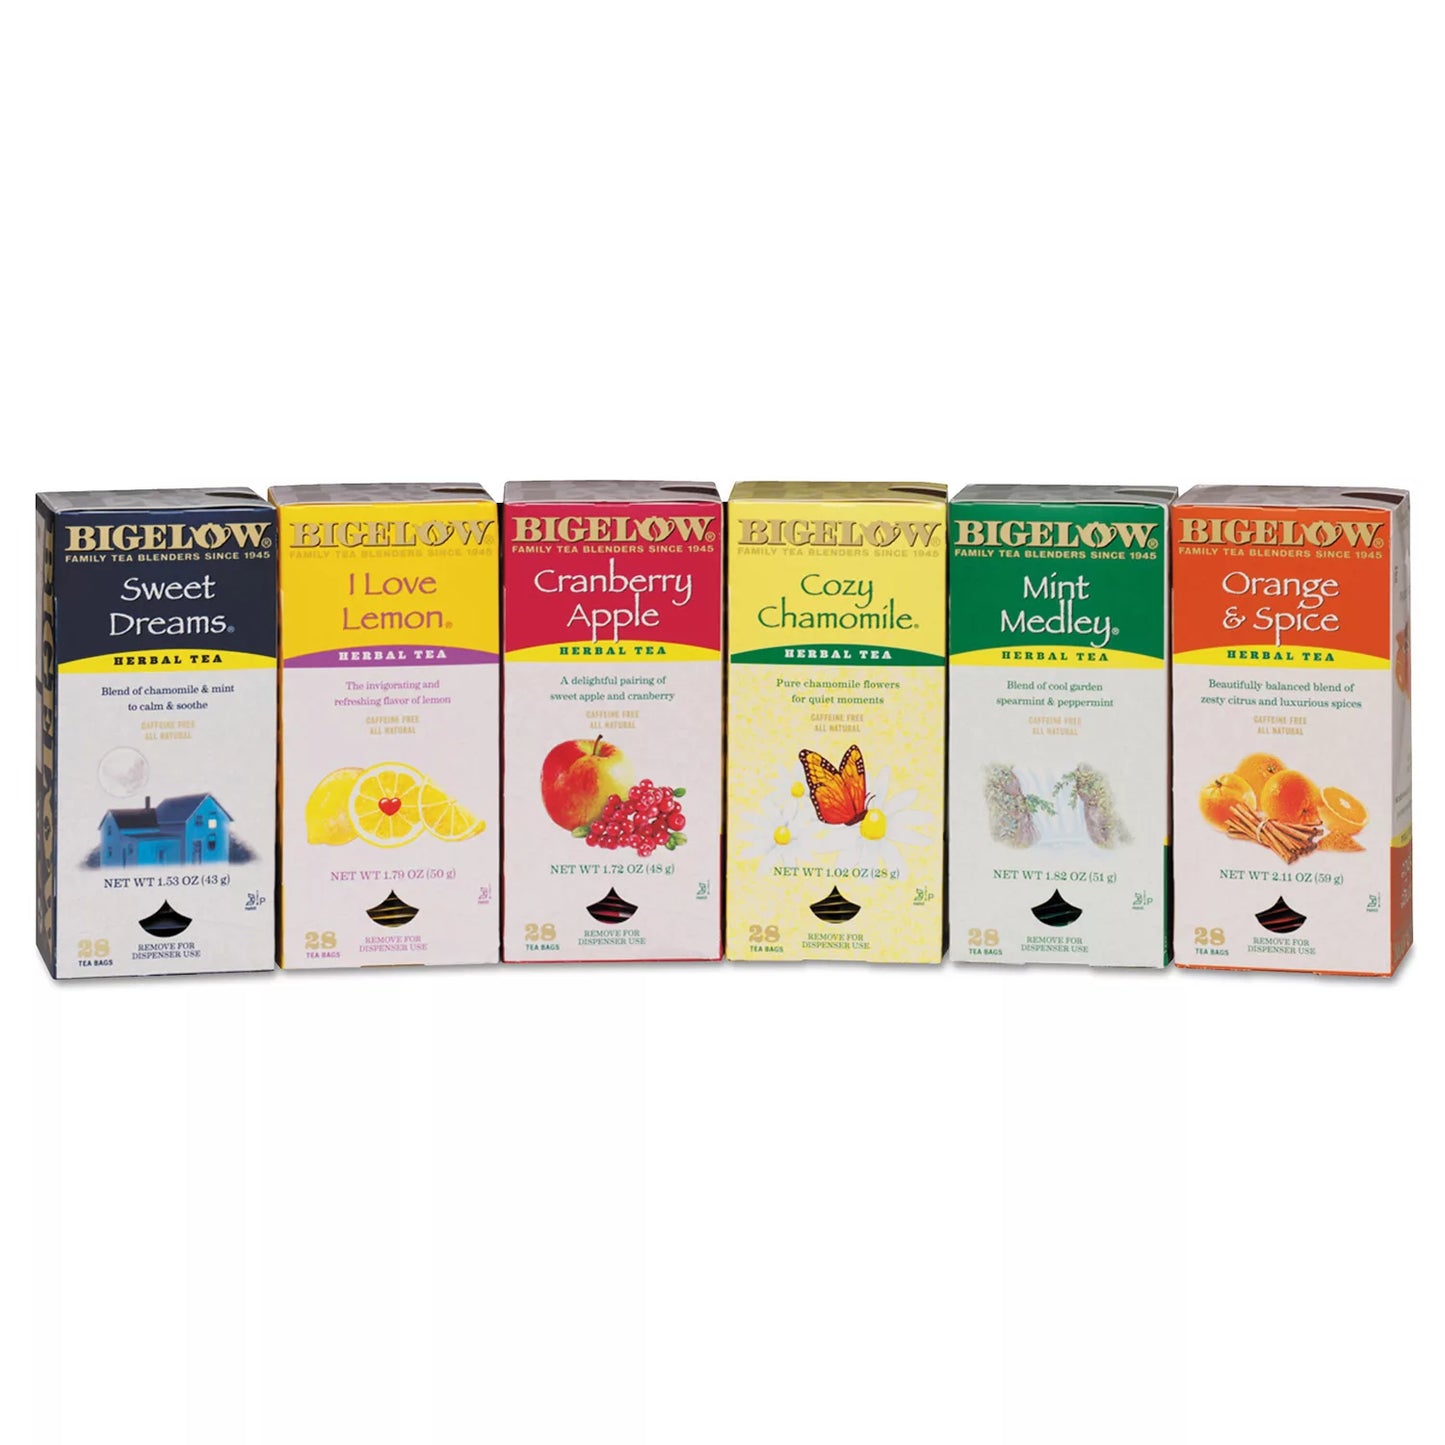 Bigelow Herbal Tea, Variety Pack, 168 bags, 28-count